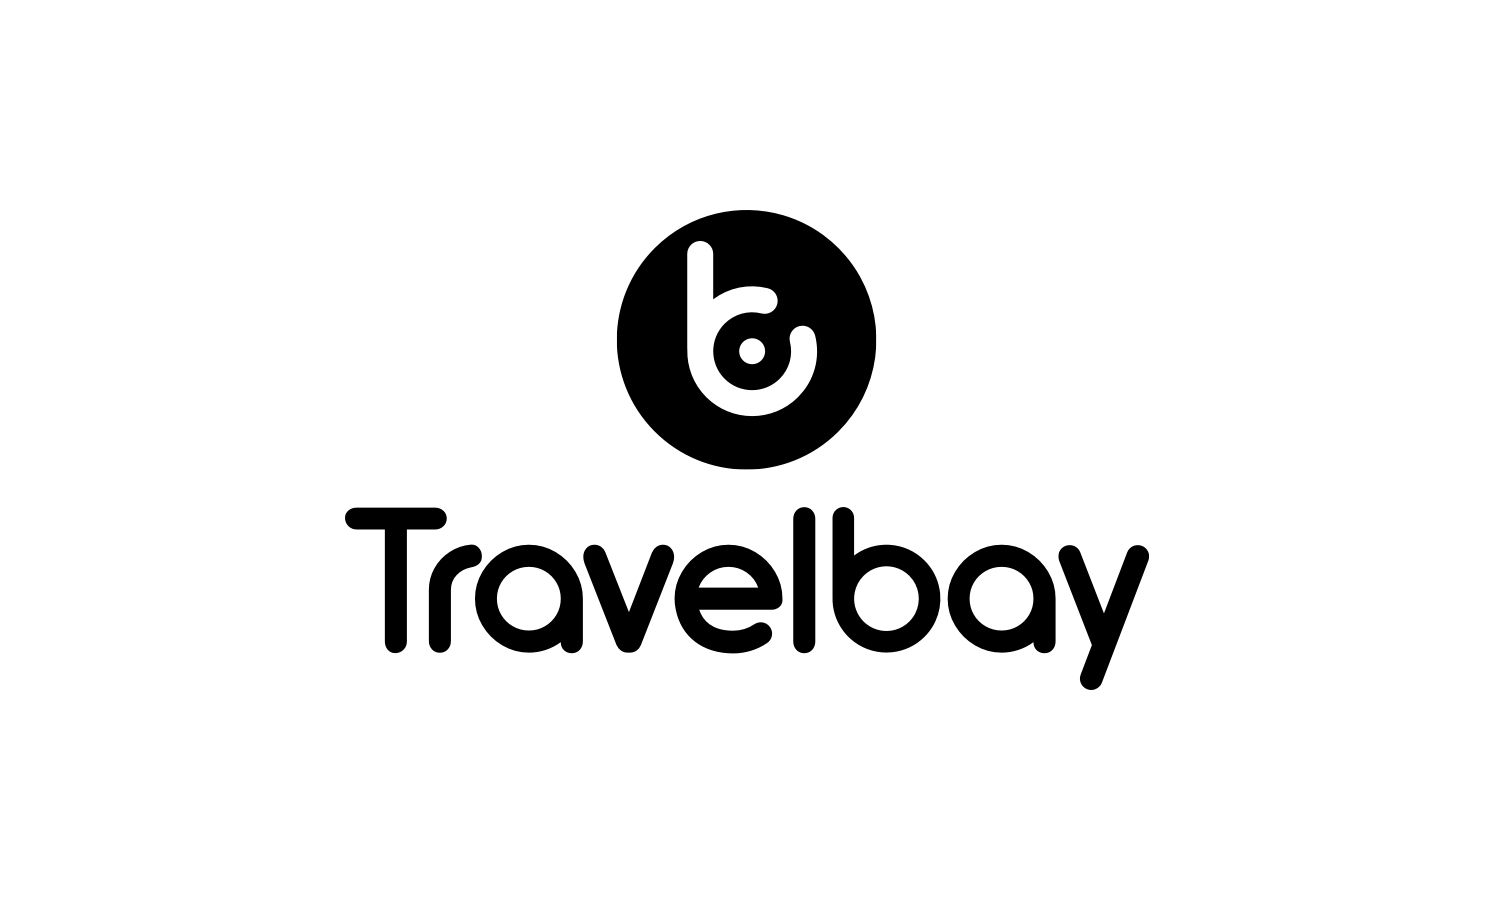 travelbay logo dark vertical